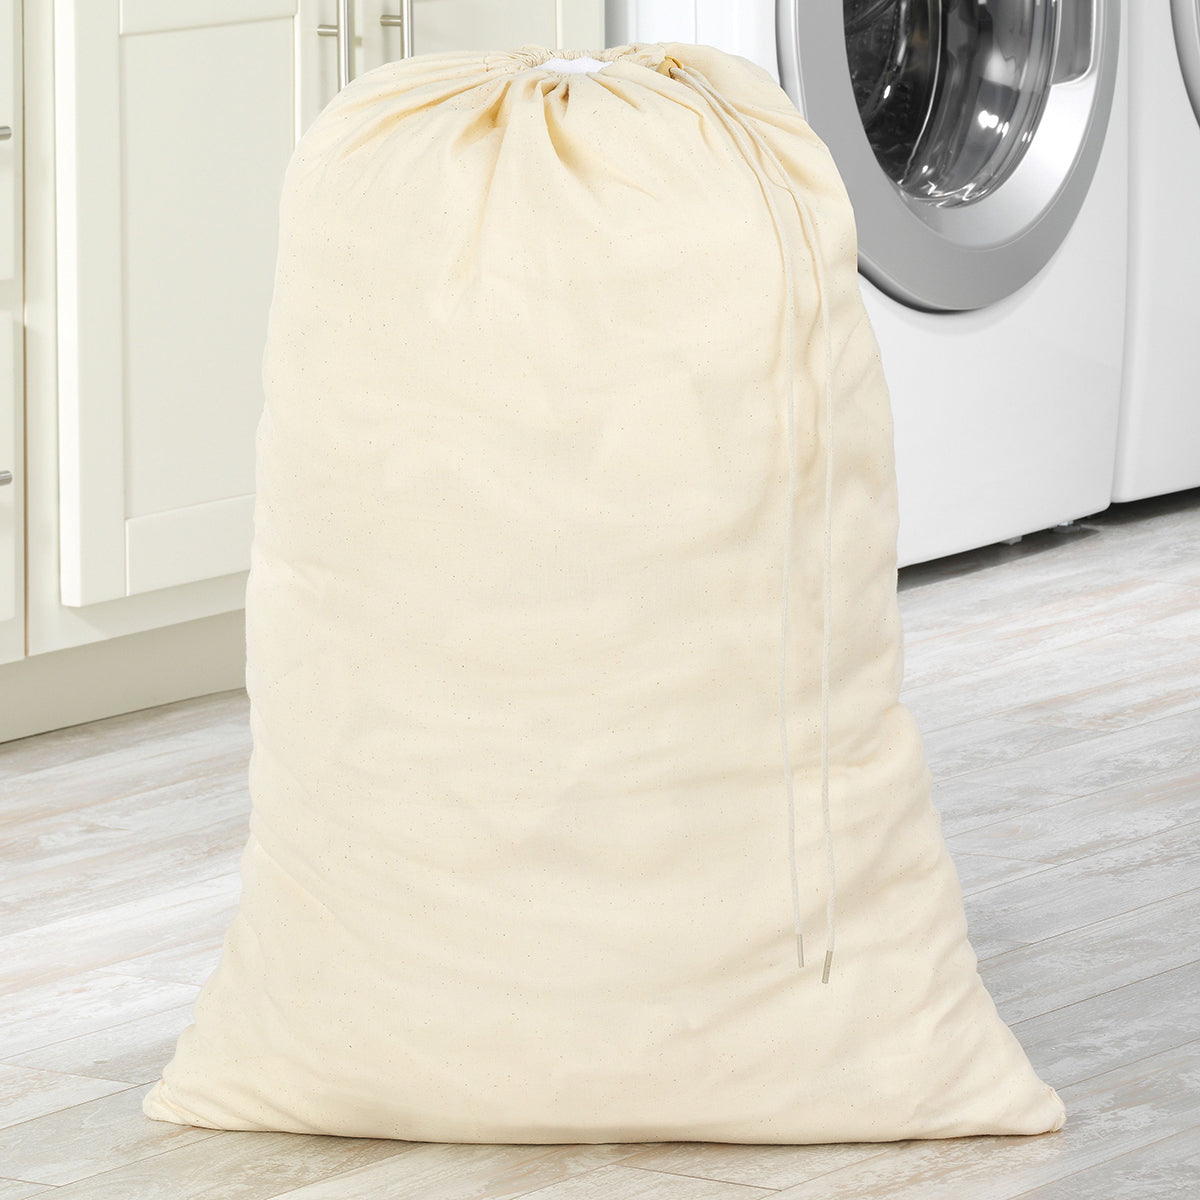 Whitmor Mfg Canvas Laundry Bag 6462-111 – Good's Store Online